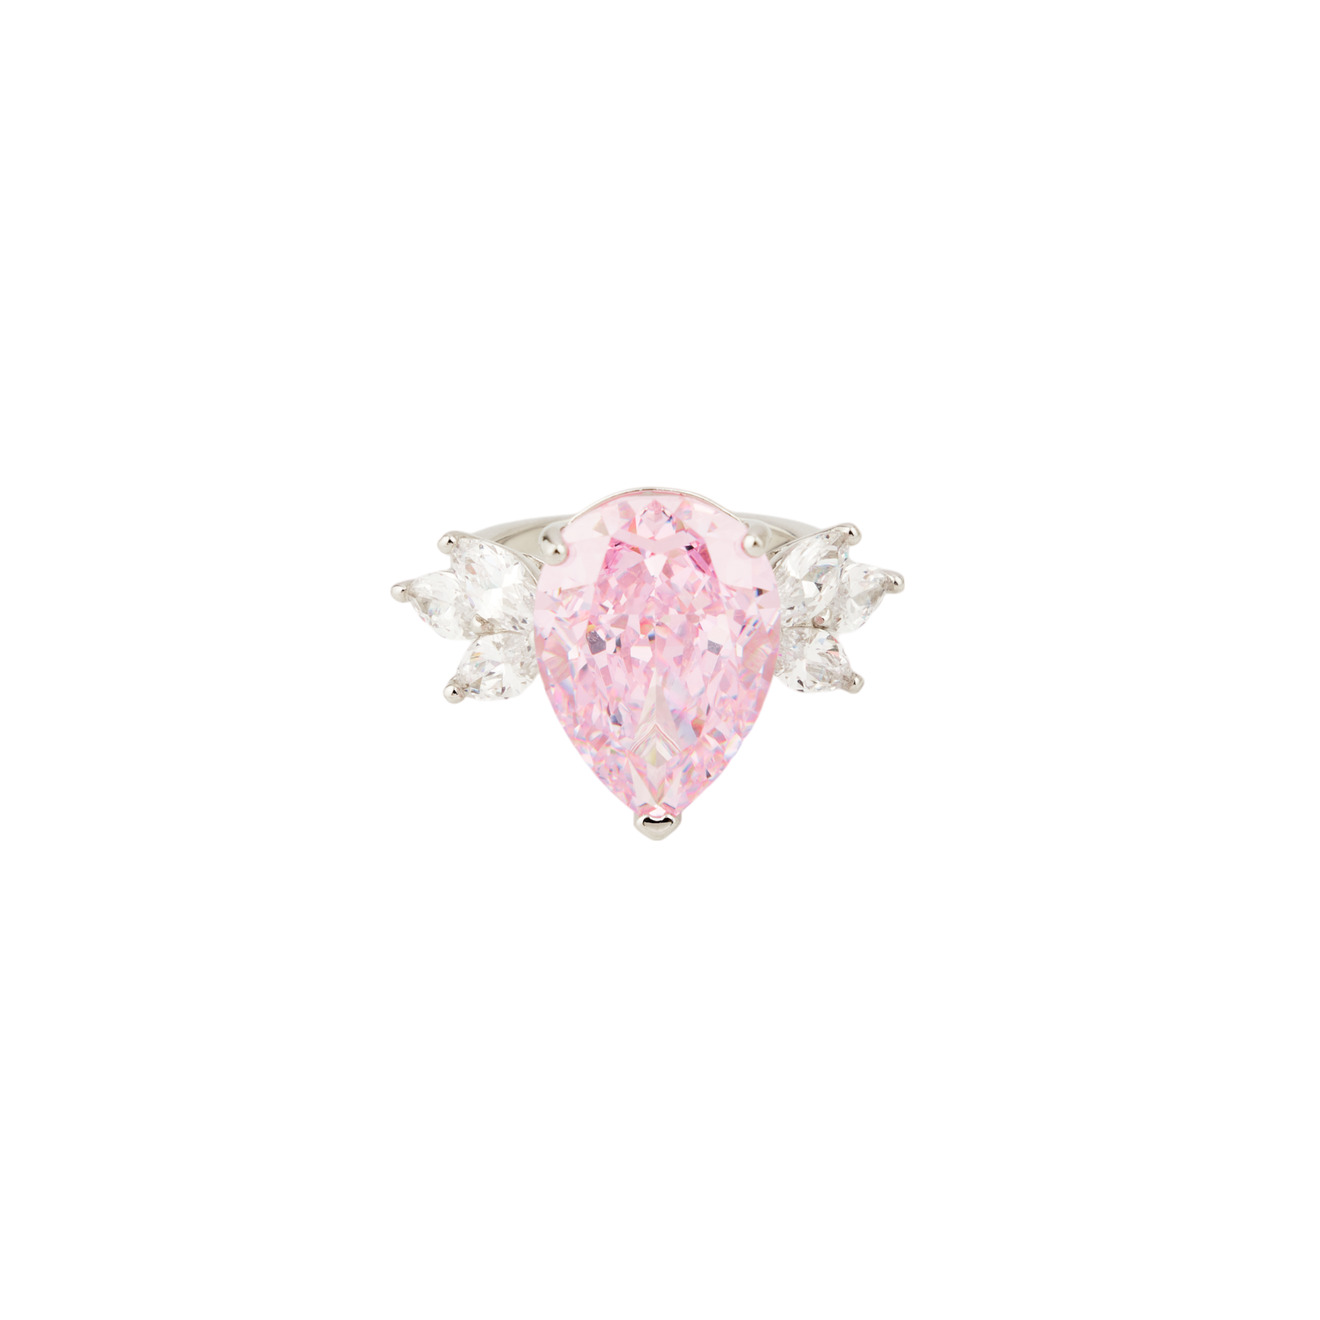 Holy Silver Кольцо из серебра с крупным розовым кристаллом и лепестками lisa smith золотистое кольцо с розовым кристаллом